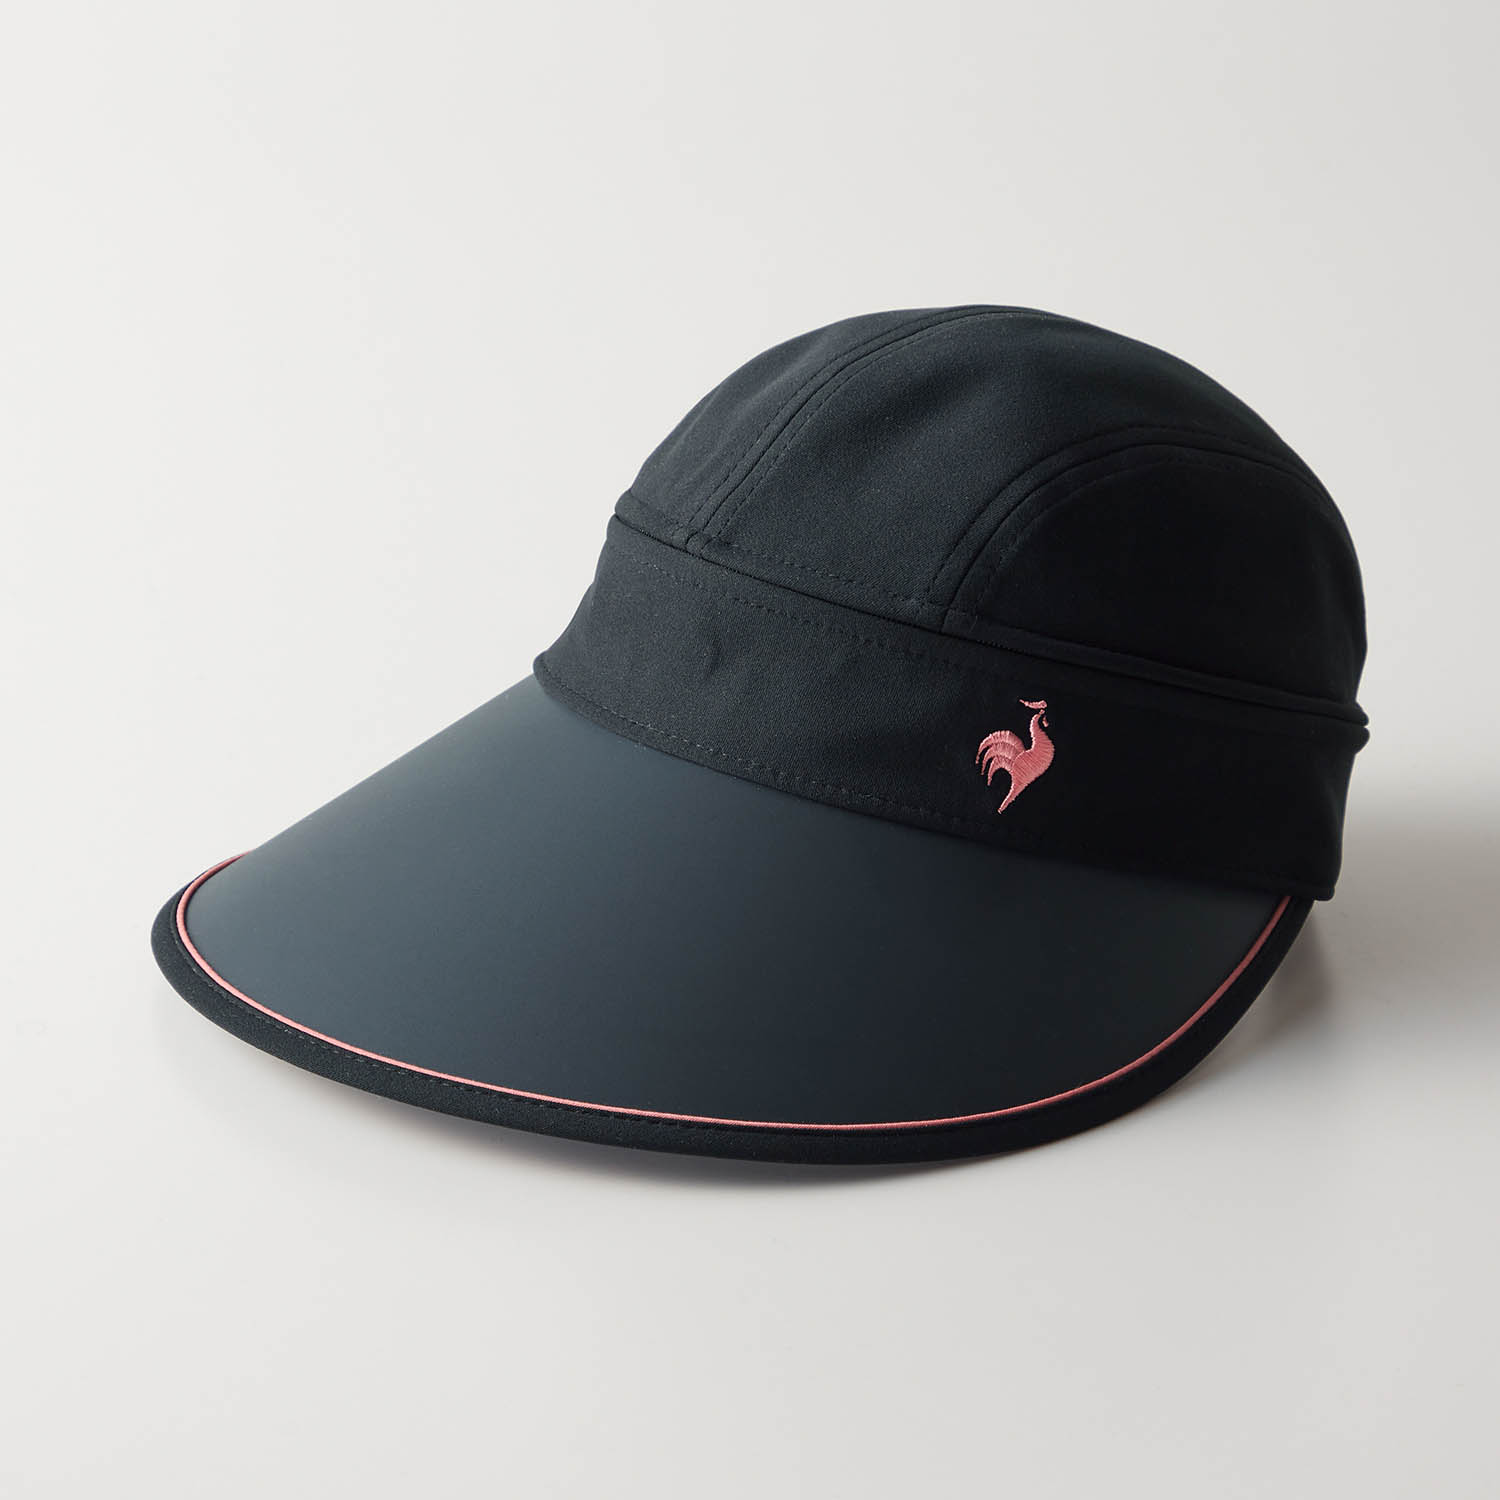 バイザー 帽子 キャップ レディース 女性 日焼け対策 2WAY 紫外線対策 ルコック シンプル お...